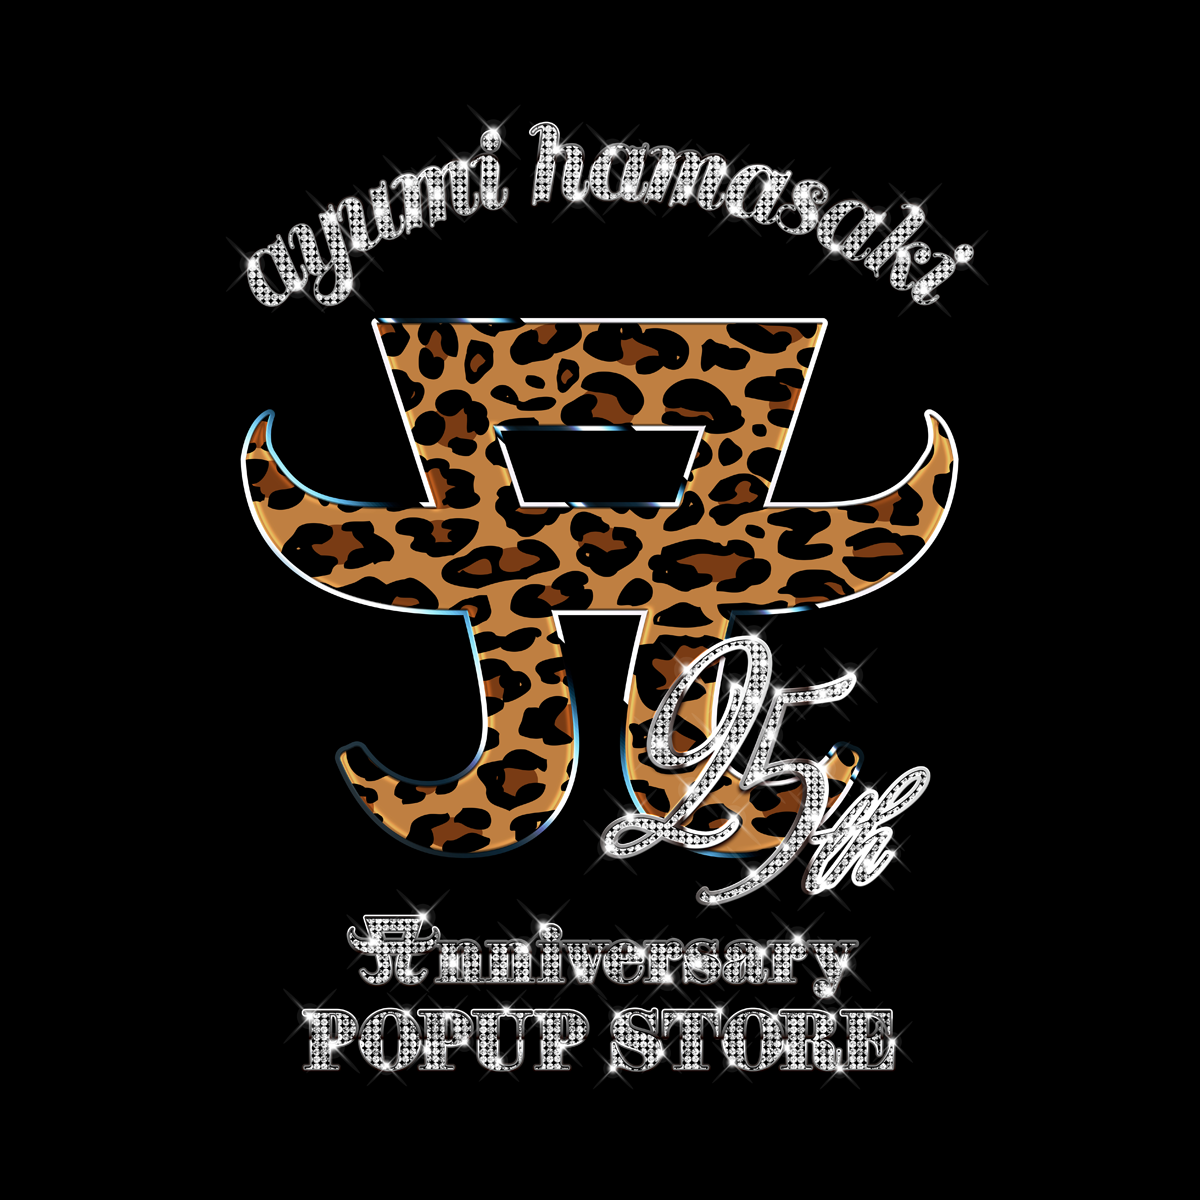 ayumi hamasaki 25th Anniversary POPUP STORE